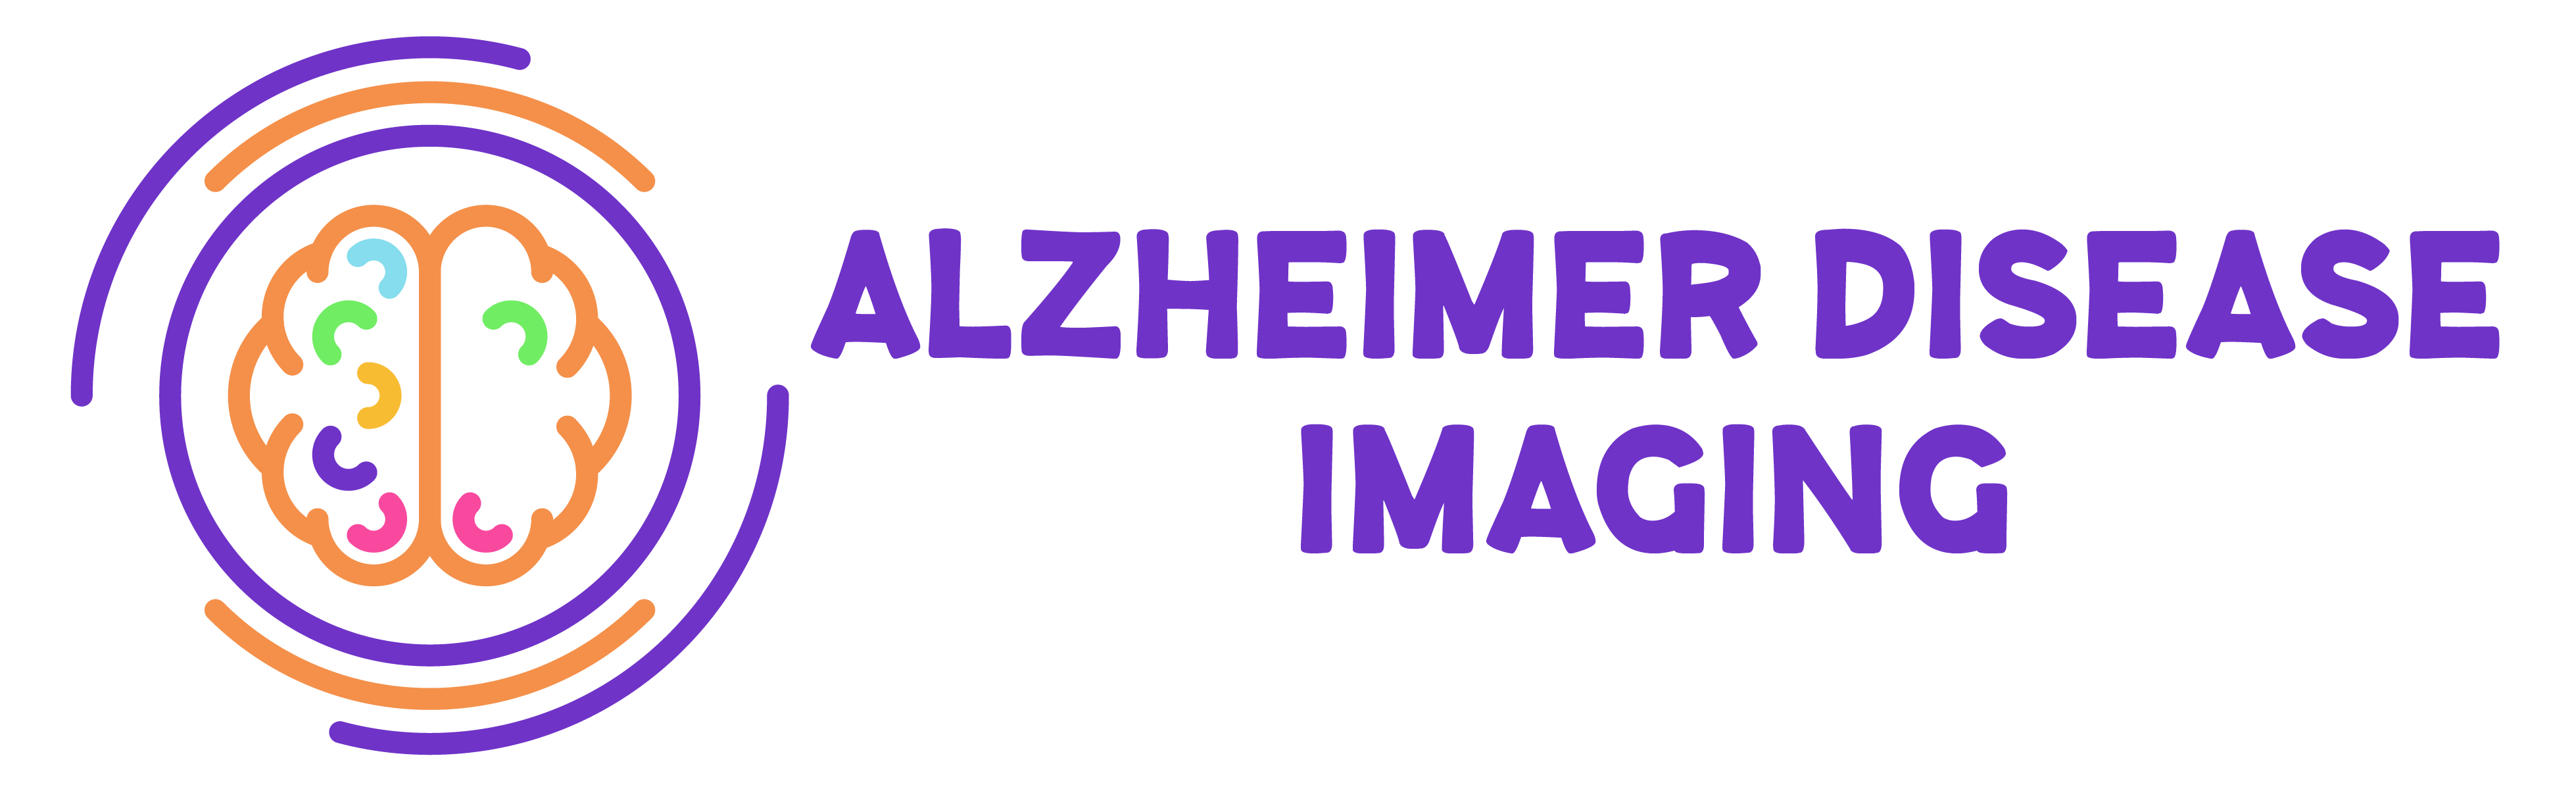 Alzheimer Disease Imaging Hudson Valley